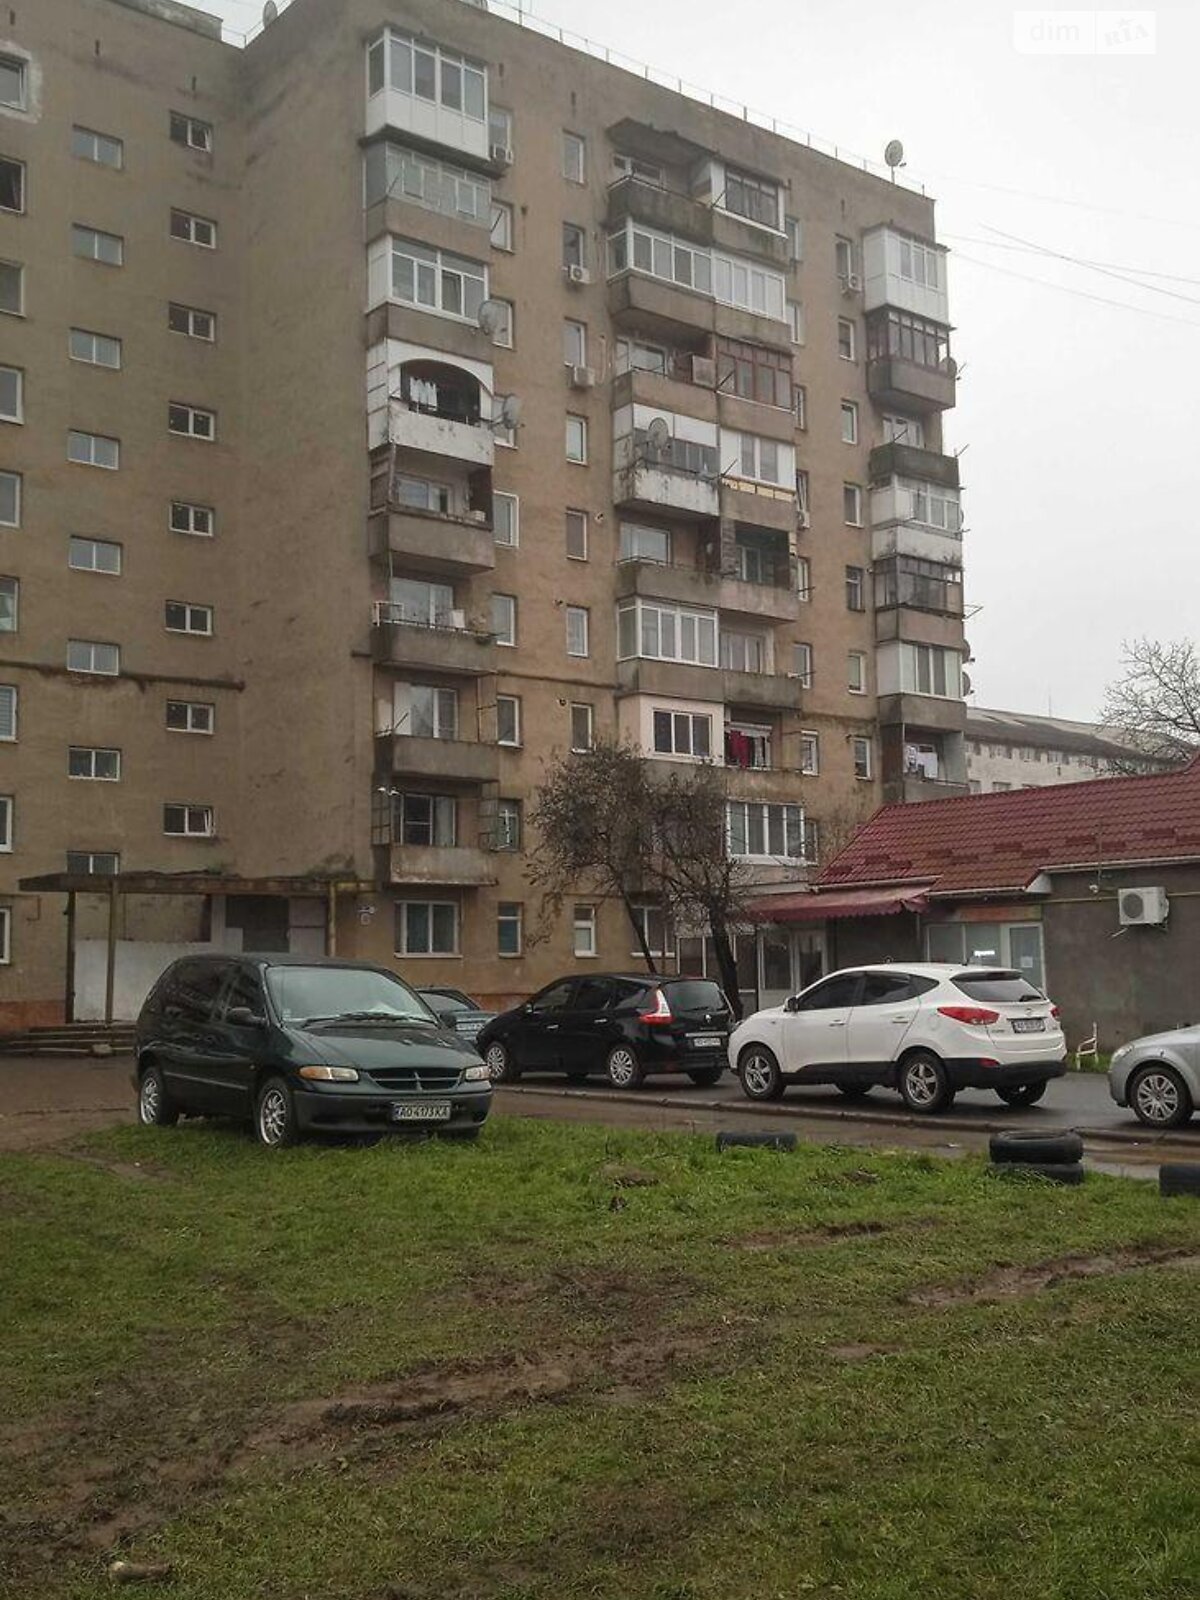 Продажа однокомнатной квартиры в Ужгороде, на ул. Михаила Вербицкого 34, район Пьяный базар фото 1